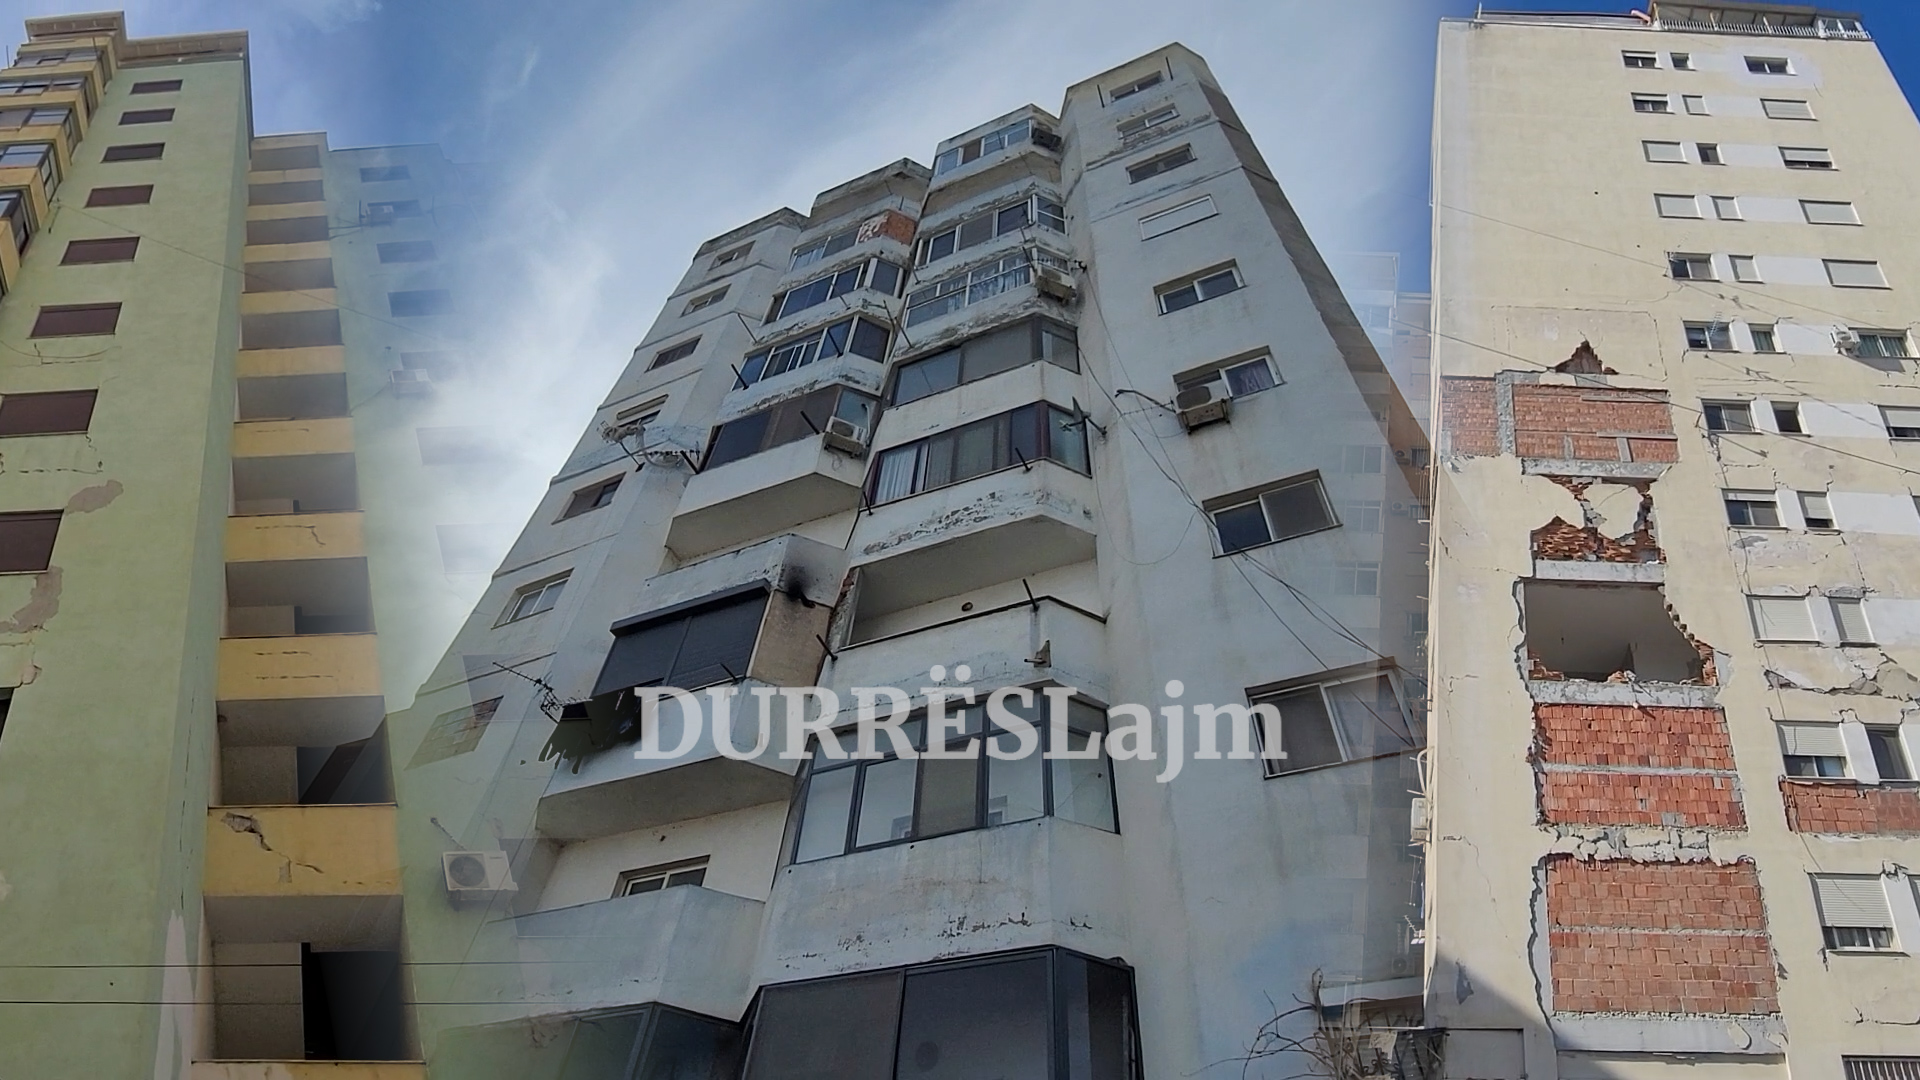 &#8220;Zot ruaje Durrësin nga një tjetër tërmet!&#8221; Në pallatin me kolonë të thyer rikthehen të banojnë 50 familje (VIDEO)